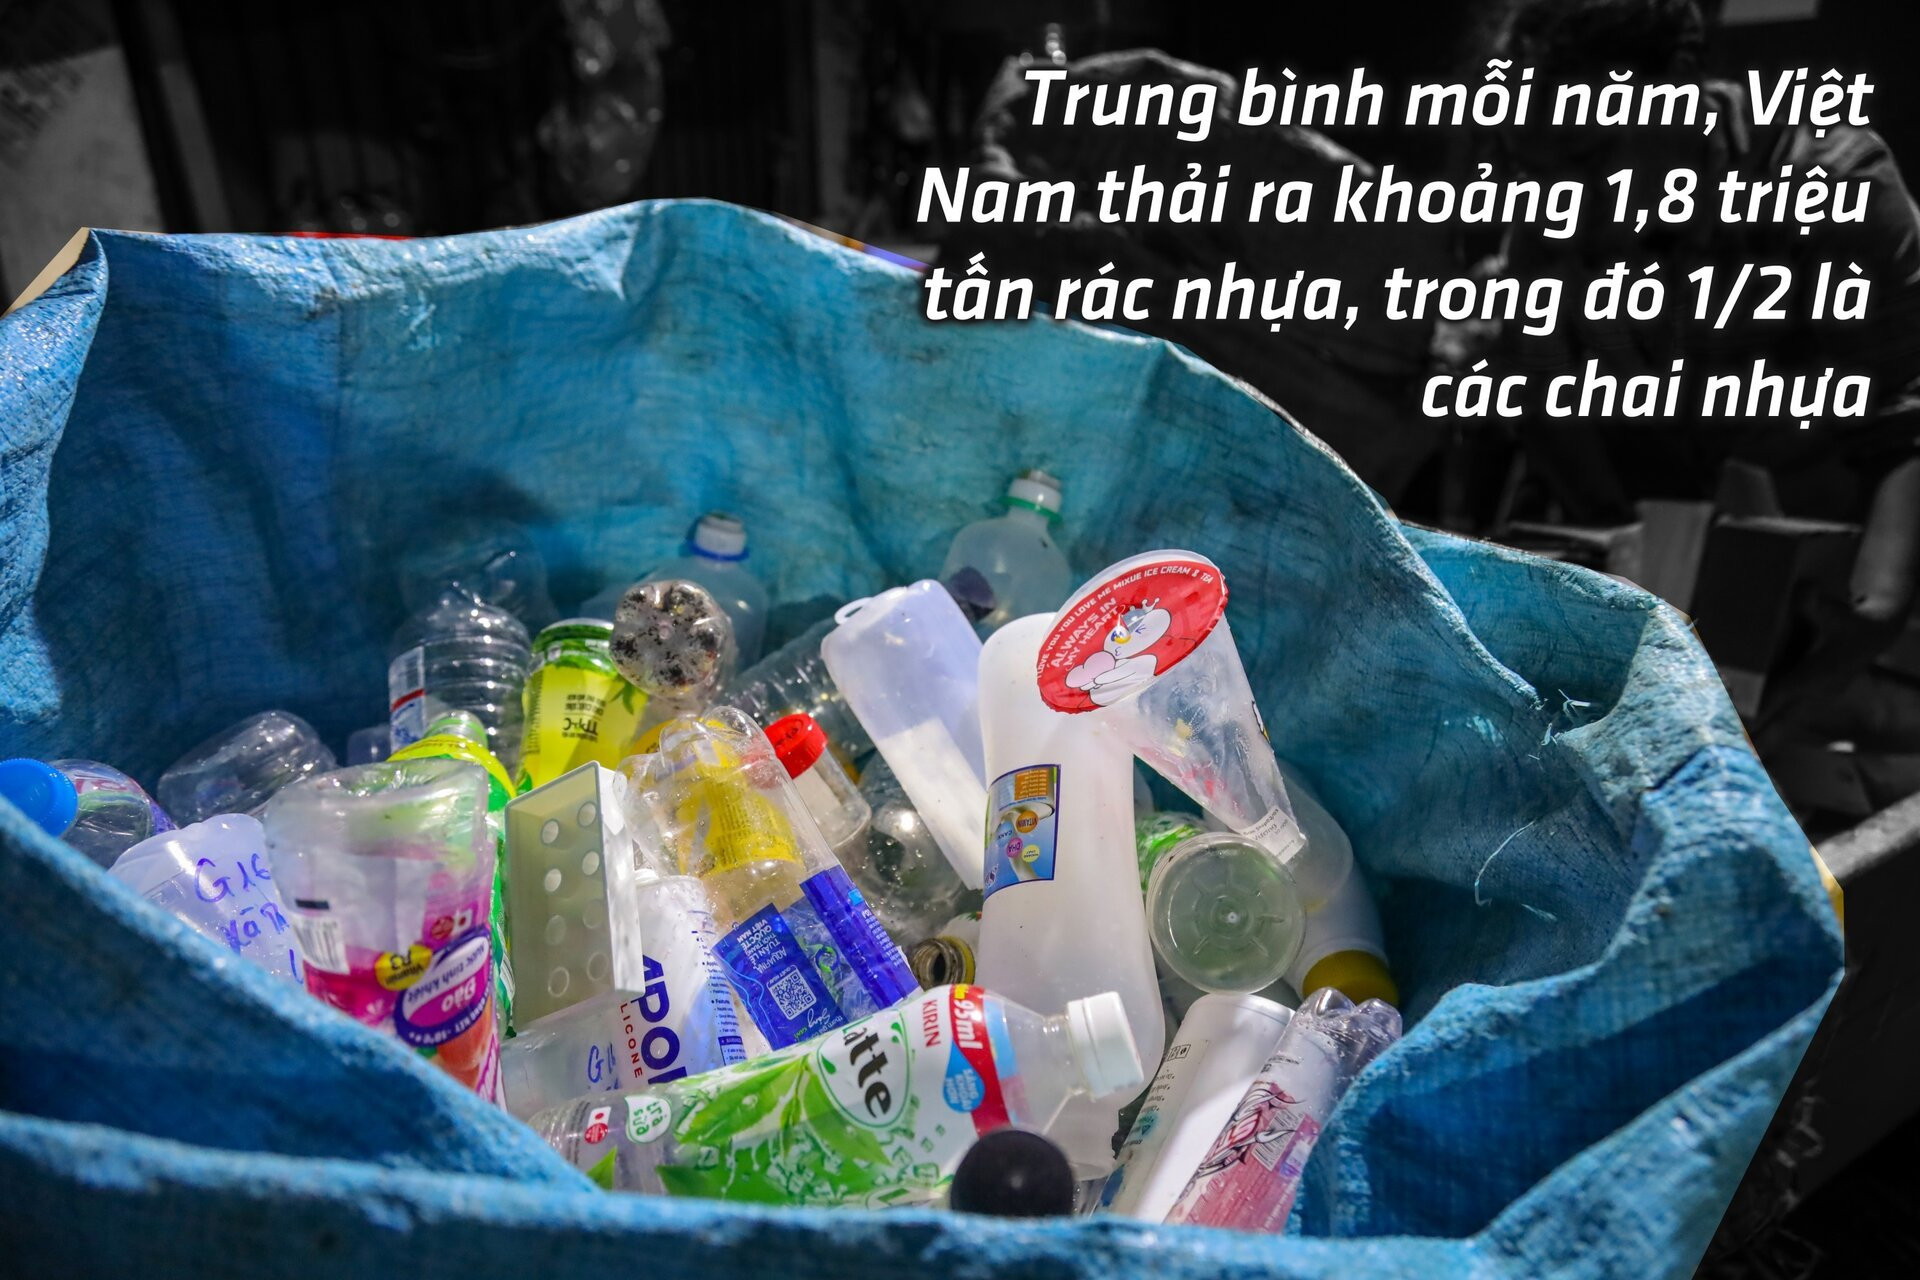 Chai nhựa, túi nylon đang hủy diệt môi trường Việt Nam ra sao? - 2